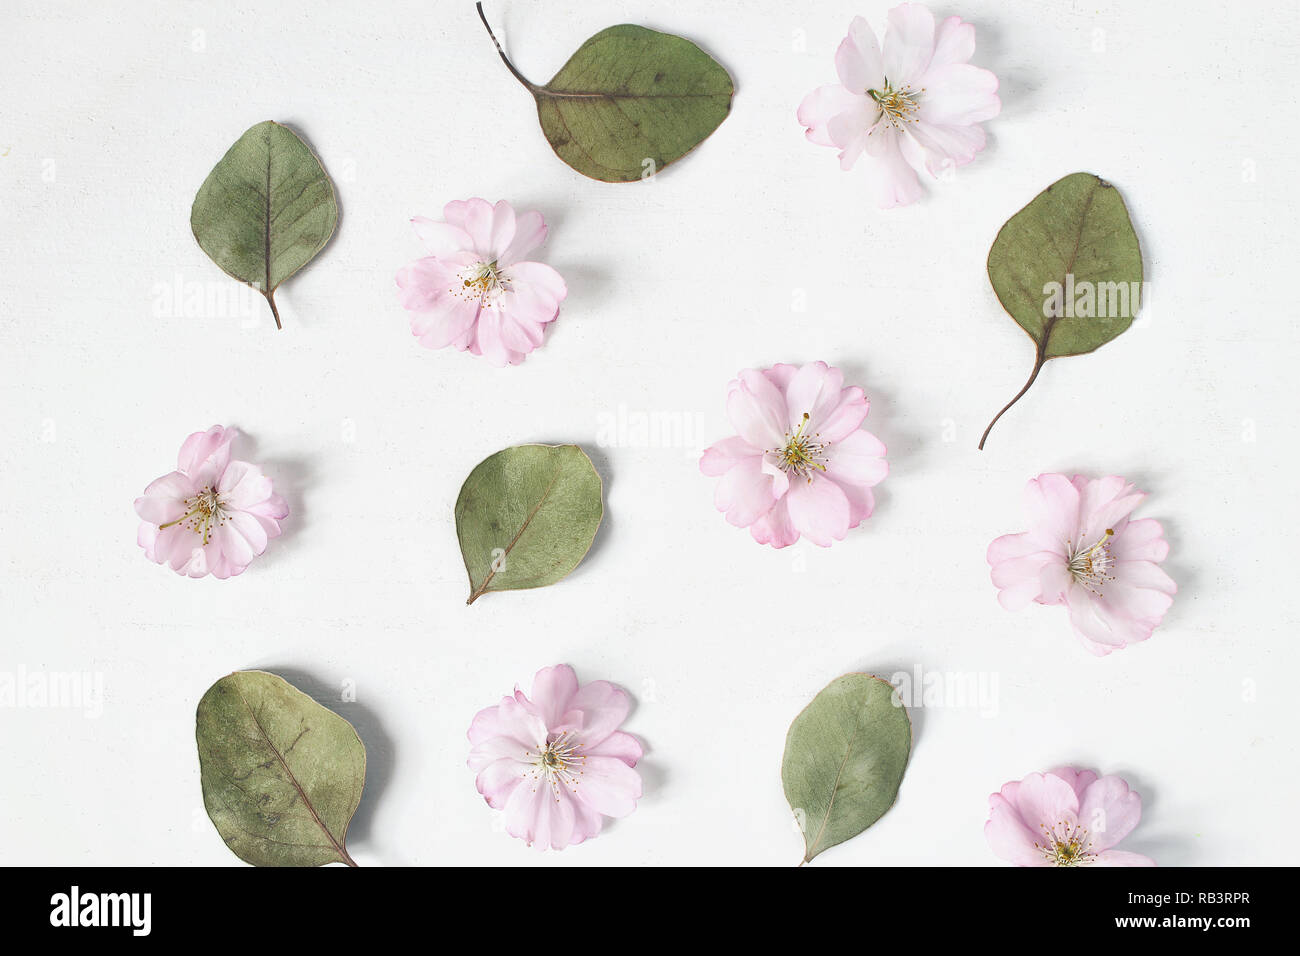 Femminile motivo floreale. Asciugare le foglie di eucalipto e rosa ciliegia giapponese albero fiorisce sul vecchio legno bianco sullo sfondo della tabella. Appartamento laico, vista dall'alto. Foto Stock